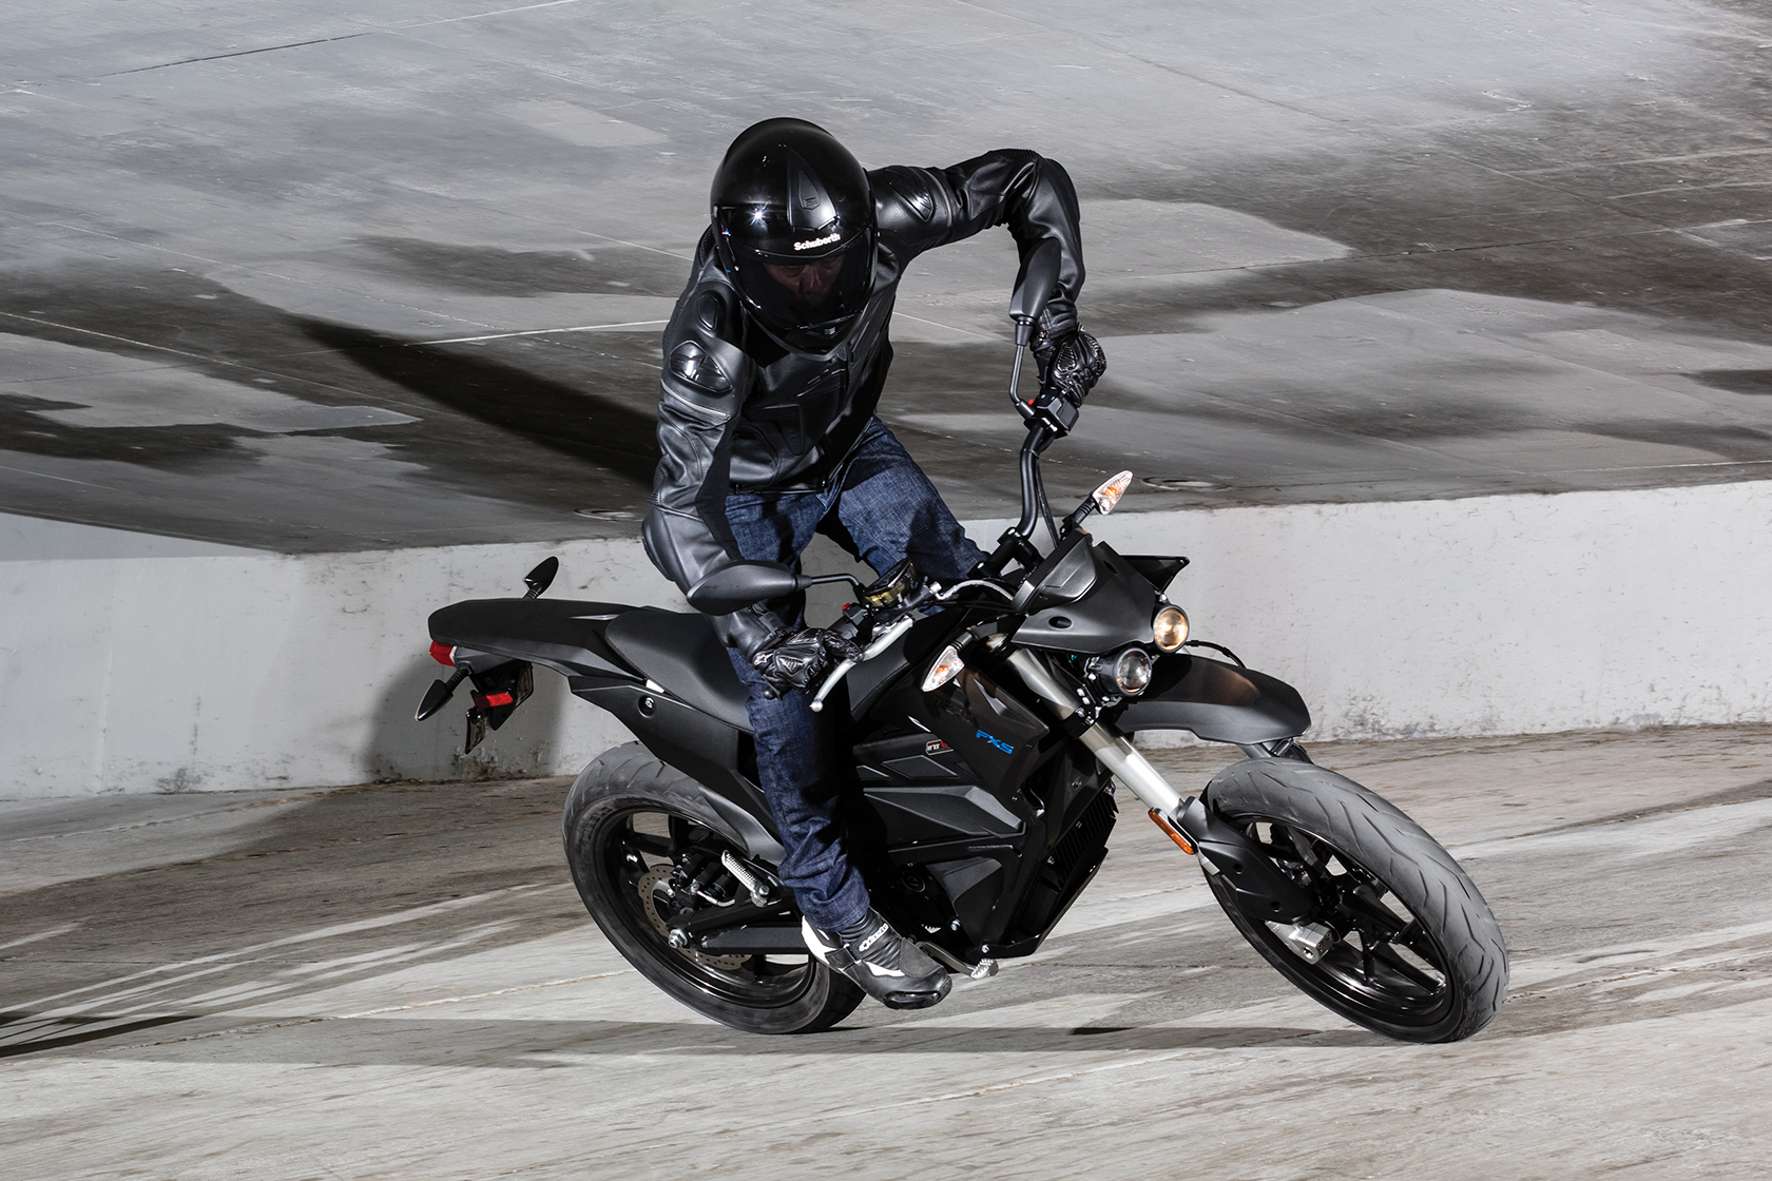 Elektro-Motorräder wie die Zero FXS spielen auf dem Zweirad-Markt aktuell noch eine Nebenrolle. © Zero/ TRD Zweirad (trd mobil)